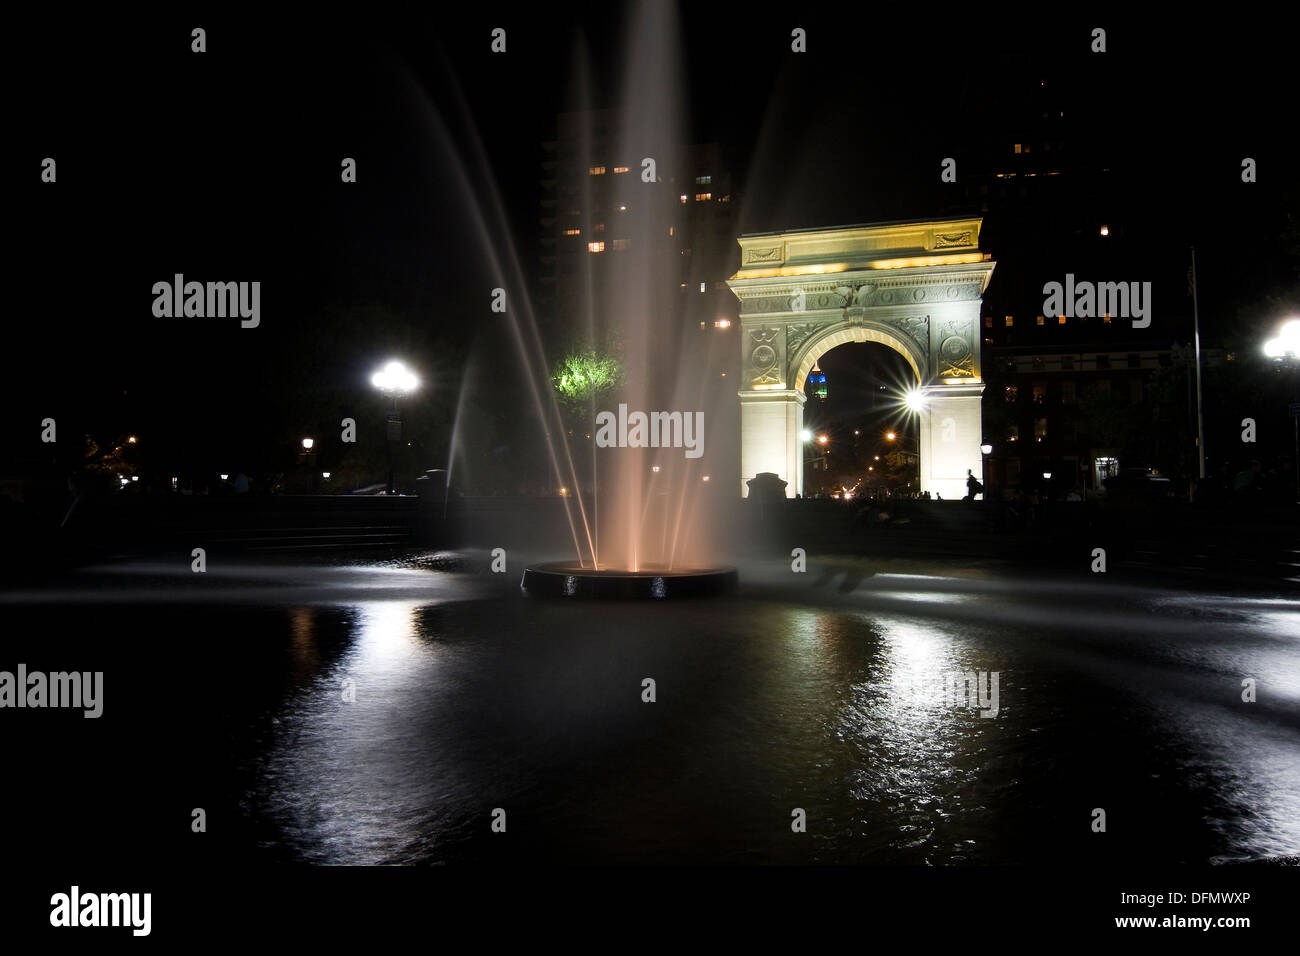 New York City's Washington Arch et fontaine illuminée la nuit comme vu de l'intérieur de Washington Square Park Banque D'Images